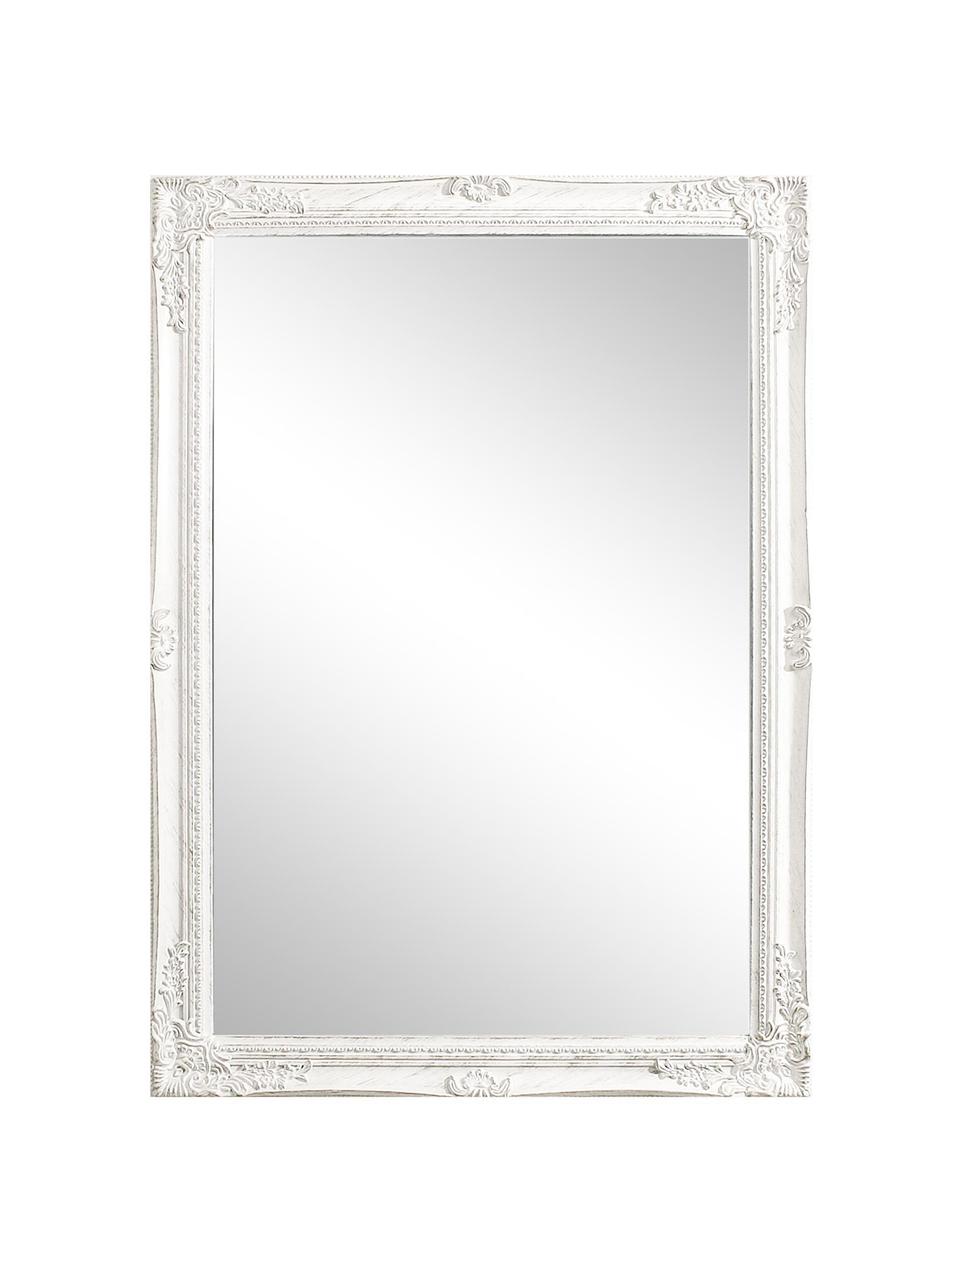 Eckiger Wandspiegel Miro mit weissem Paulowniaholzrahmen, Rahmen: Paulowniaholz, beschichte, Spiegelfläche: Spiegelglas, Weiss, B 72 x H 102 cm